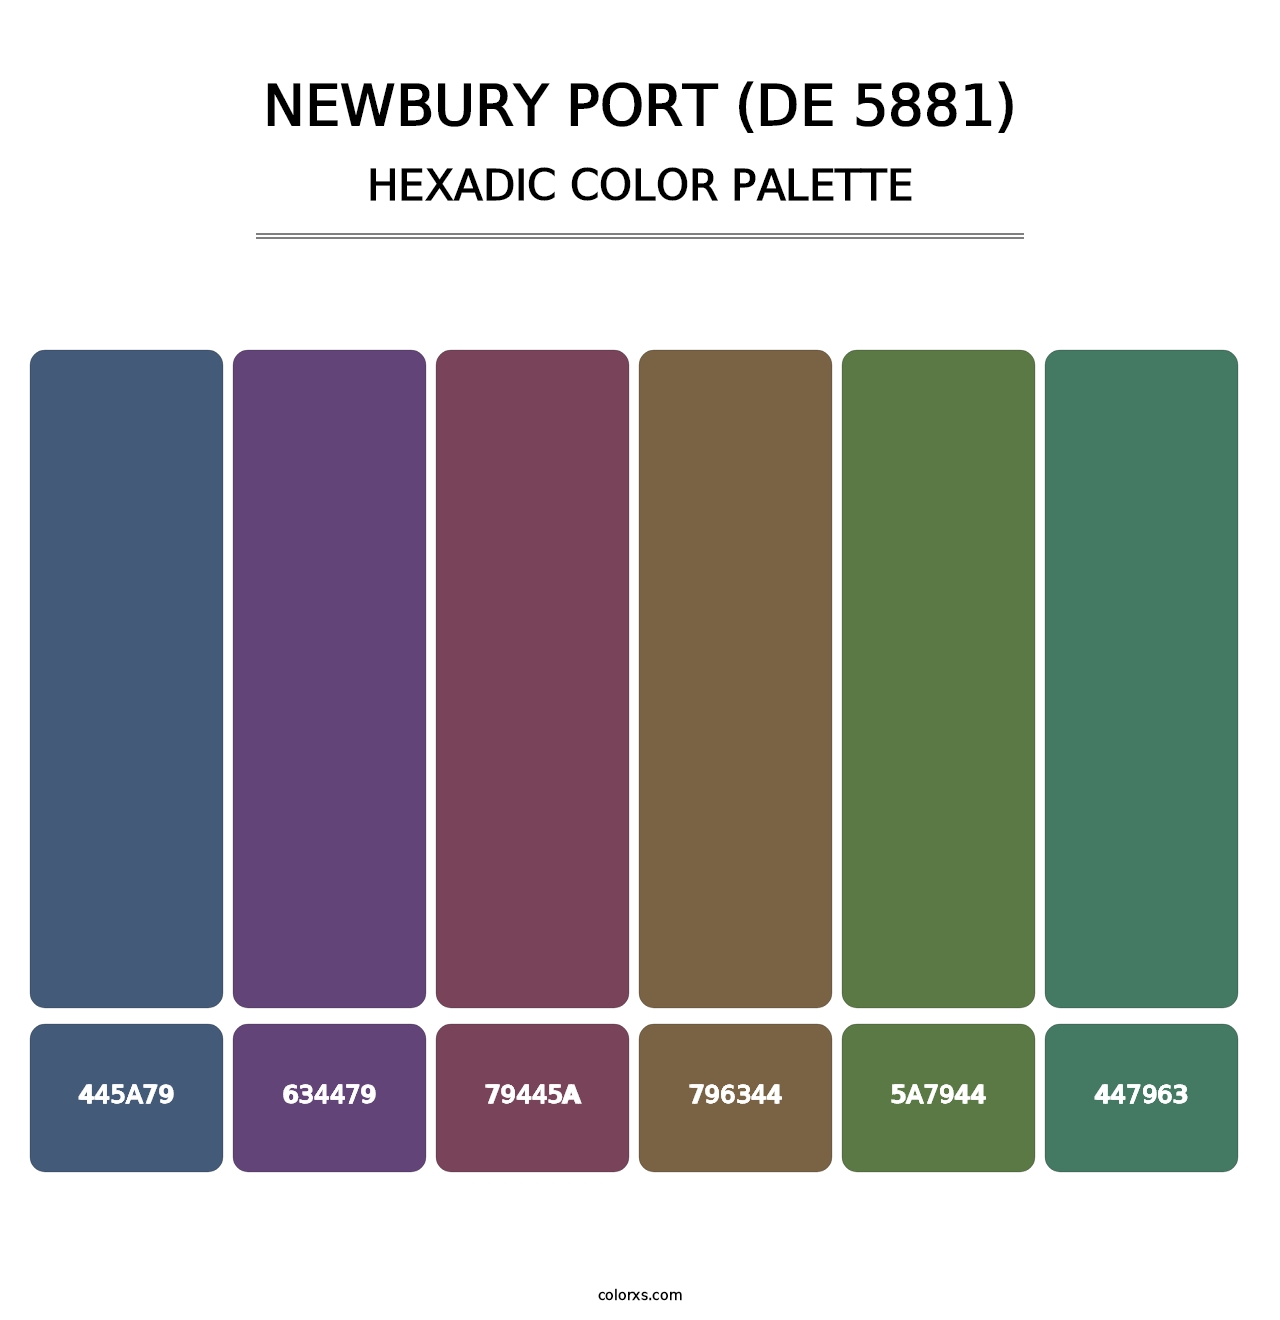 Newbury Port (DE 5881) - Hexadic Color Palette